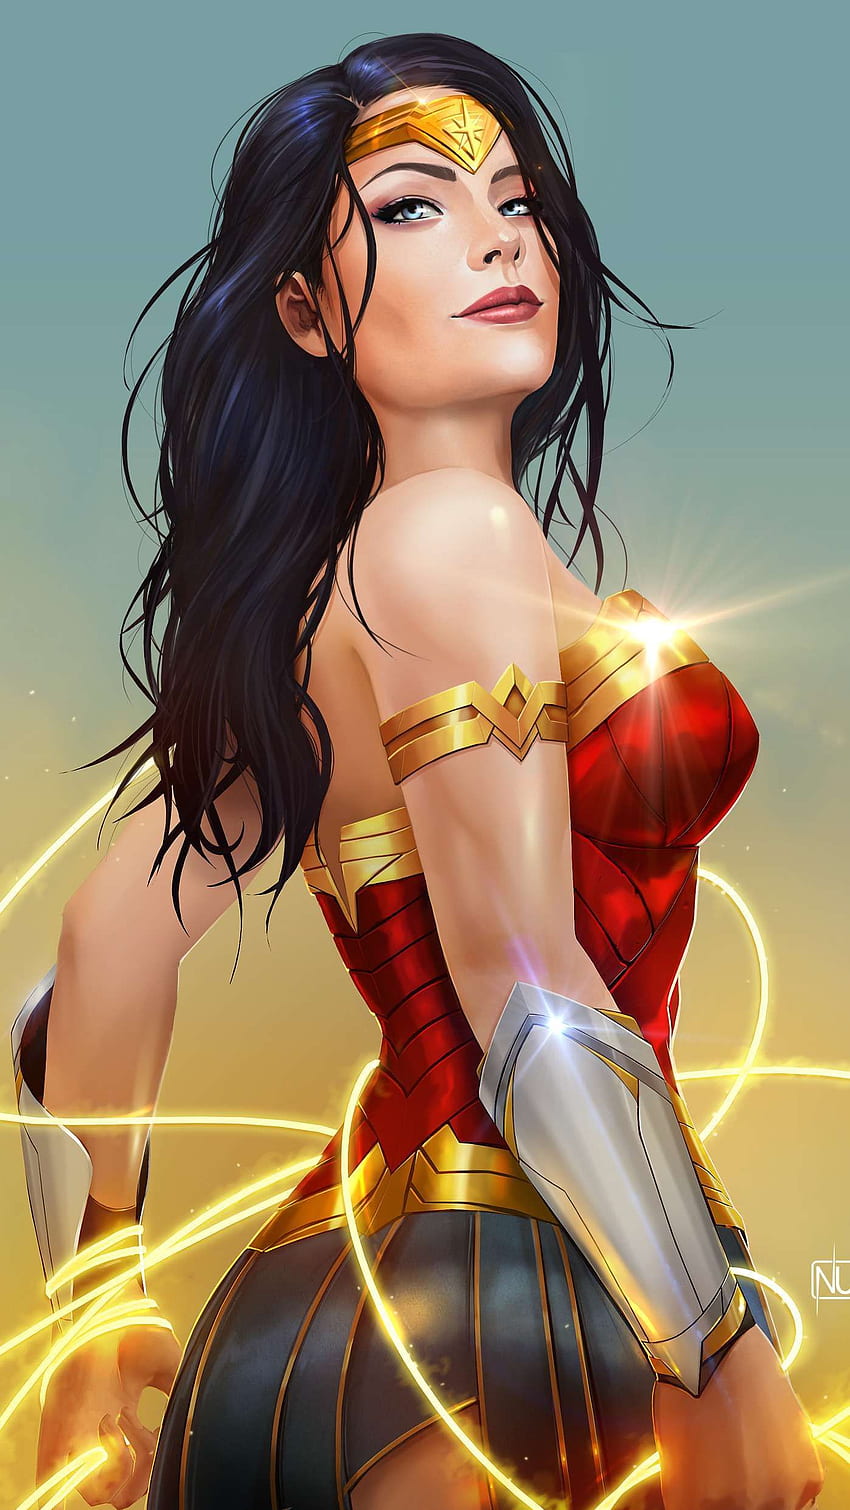 Wonder Woman Sword Shield DC Superhero PC Desktop 4K Wallpaper free Download